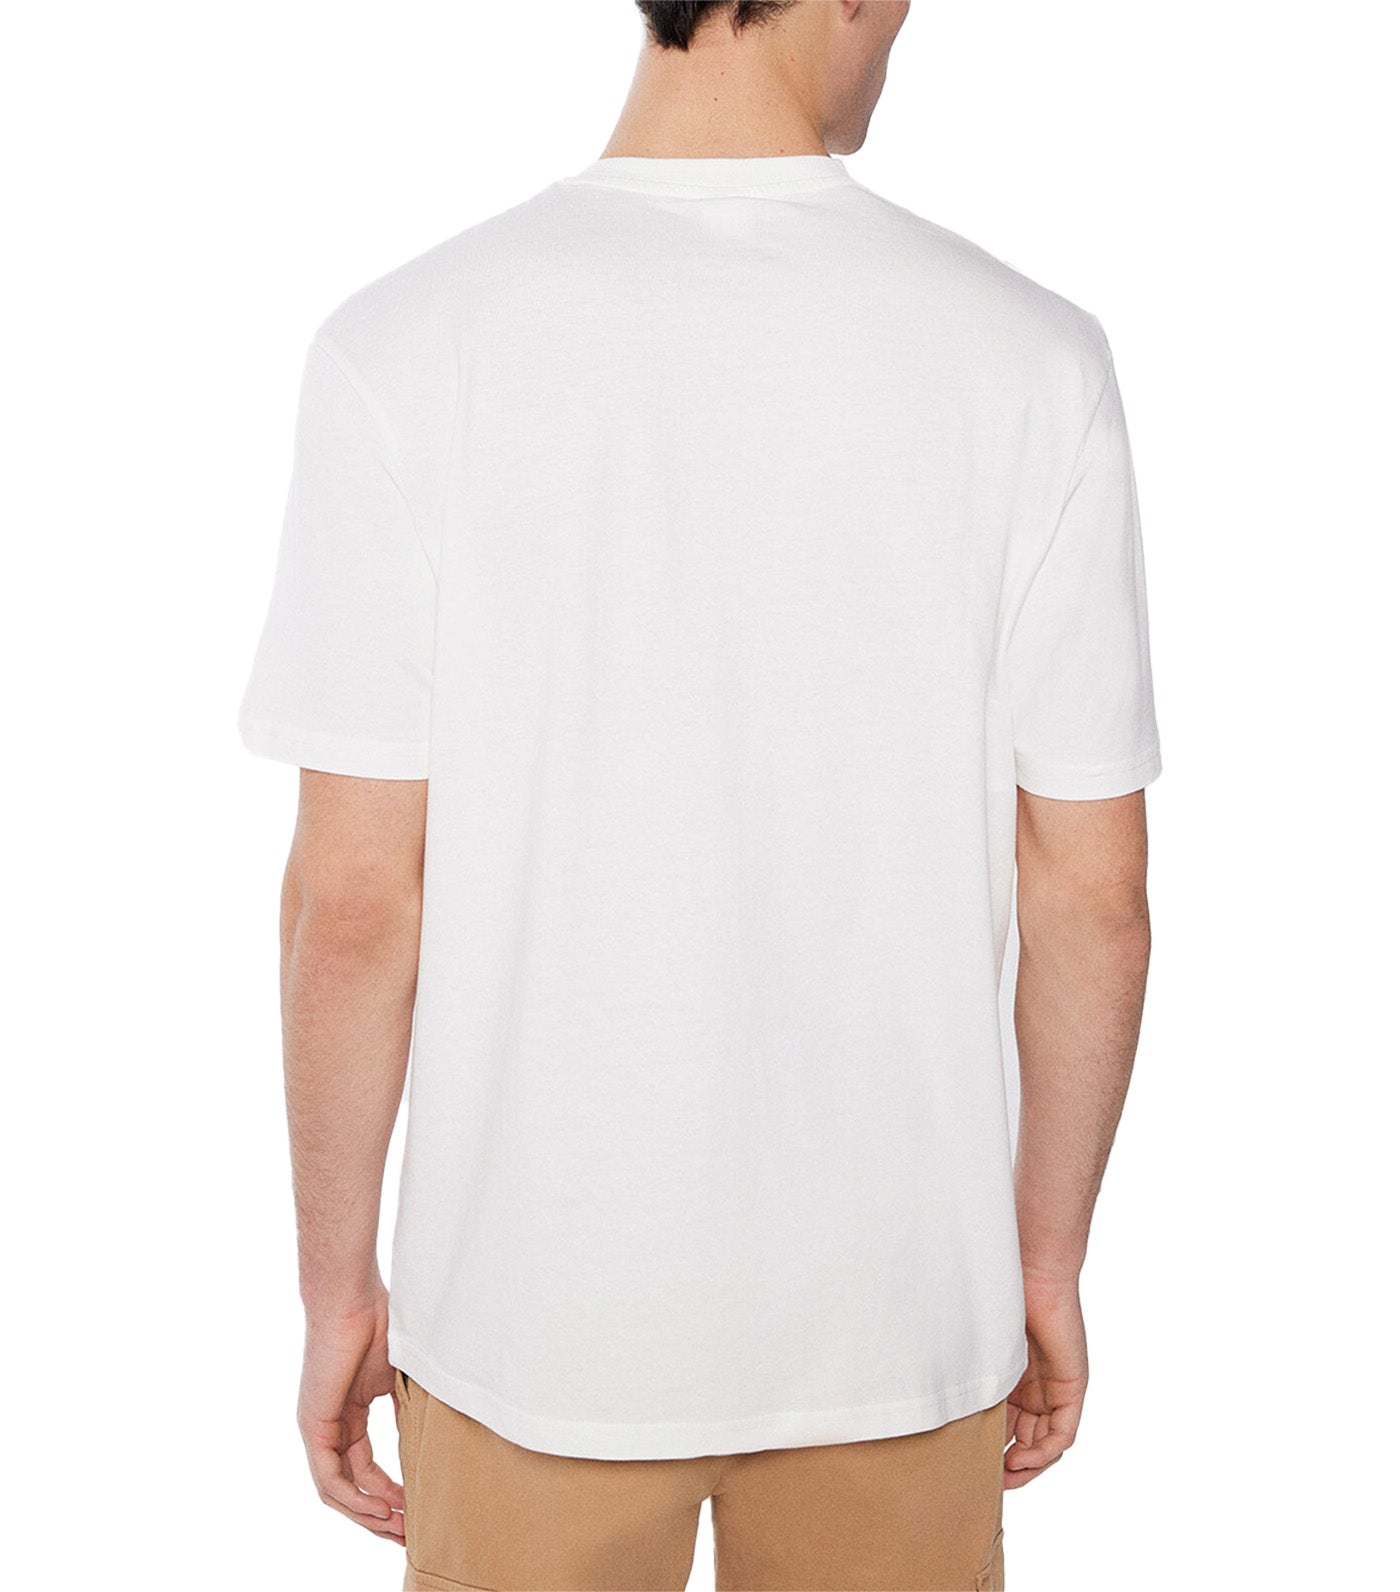 Cruise T-Shirt White